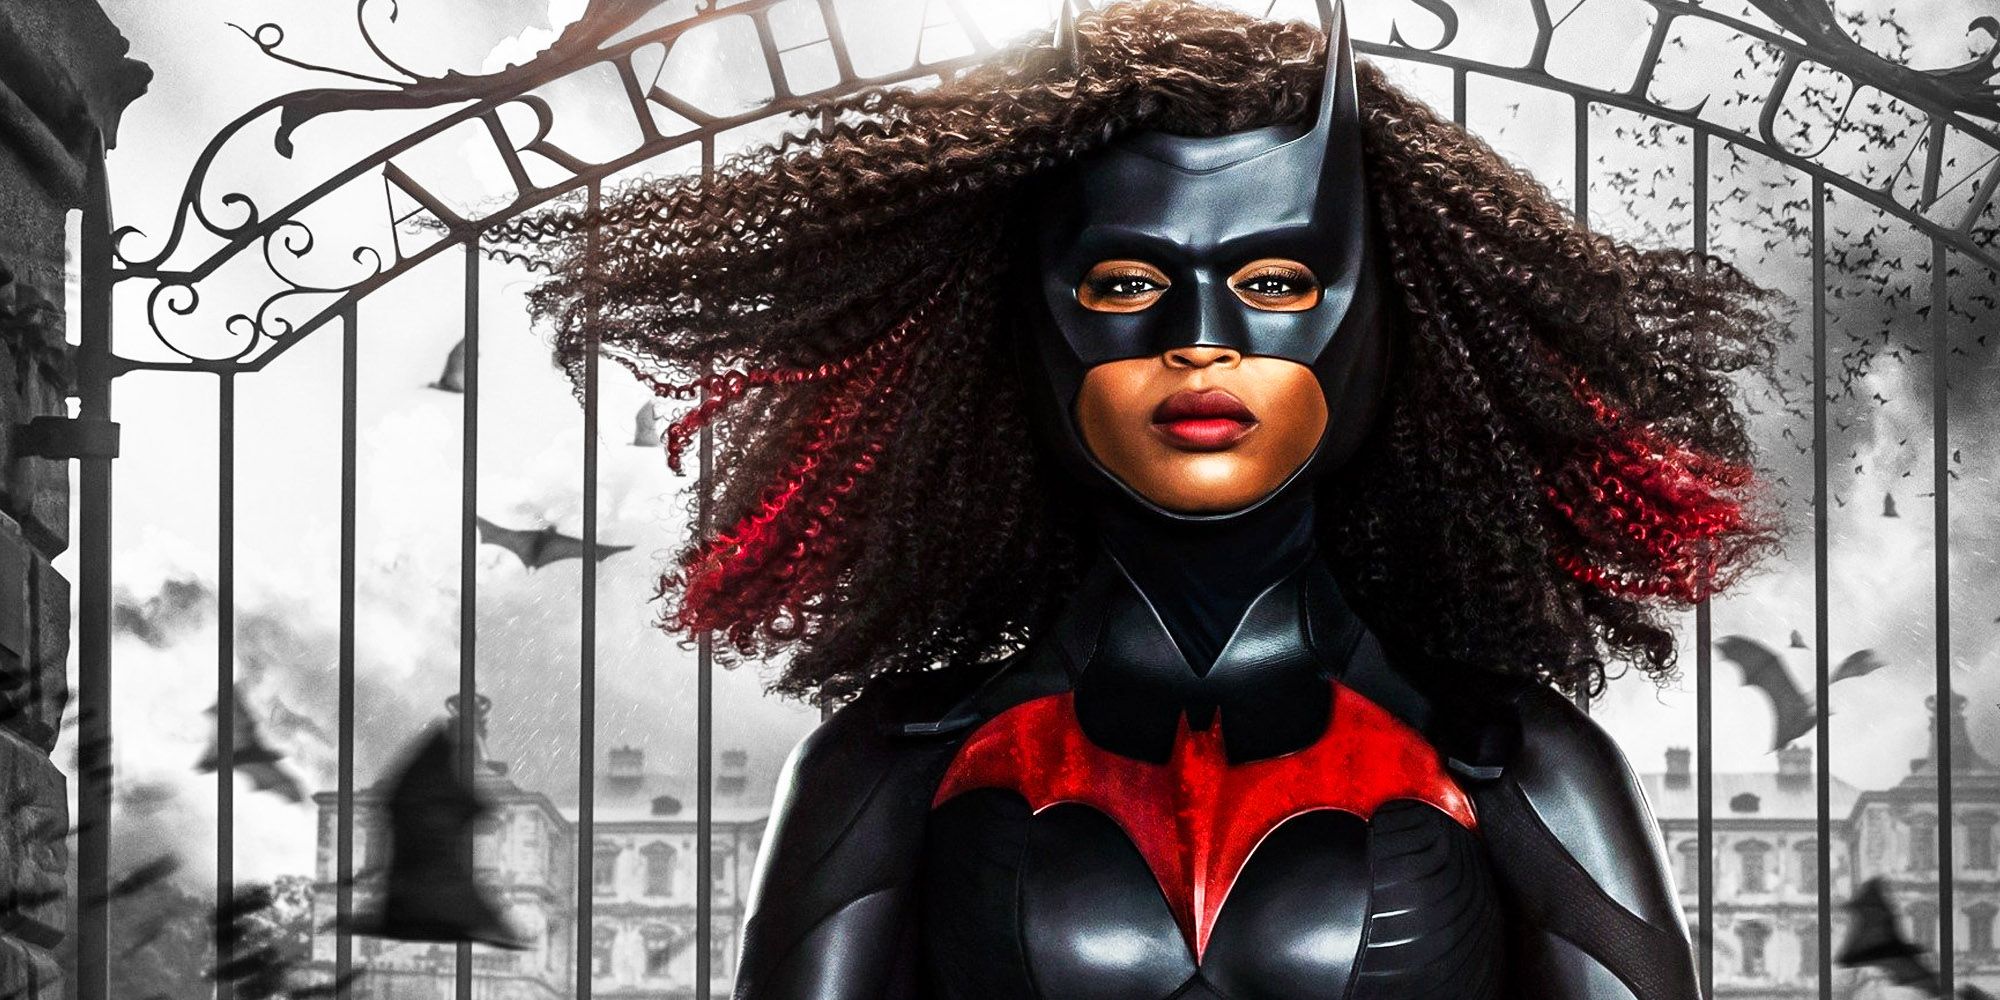 Las vallas publicitarias de Save Batwoman aparecen como campaña de fanáticos para HBO Max Pick Up